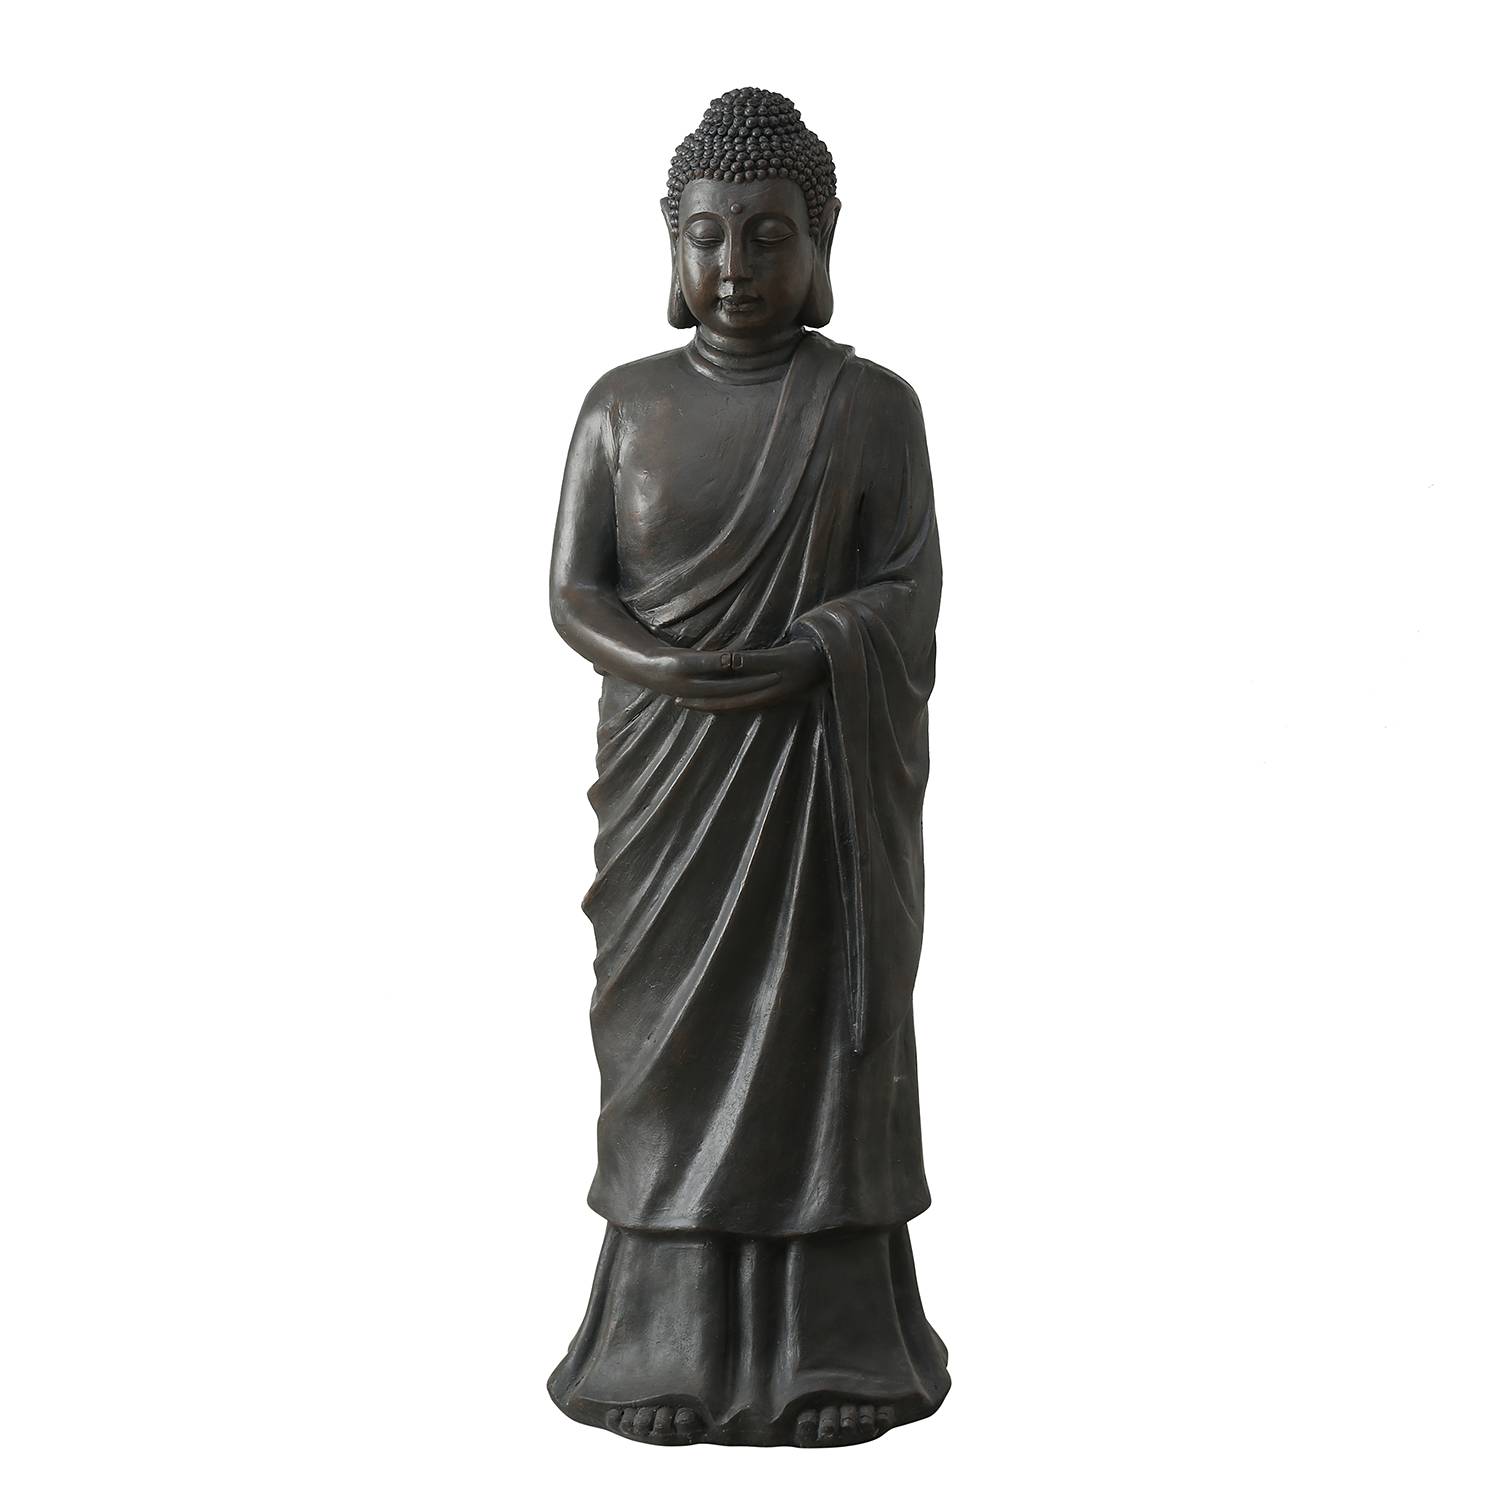 Image of Statuette Buddha Rimy 000000001000264136